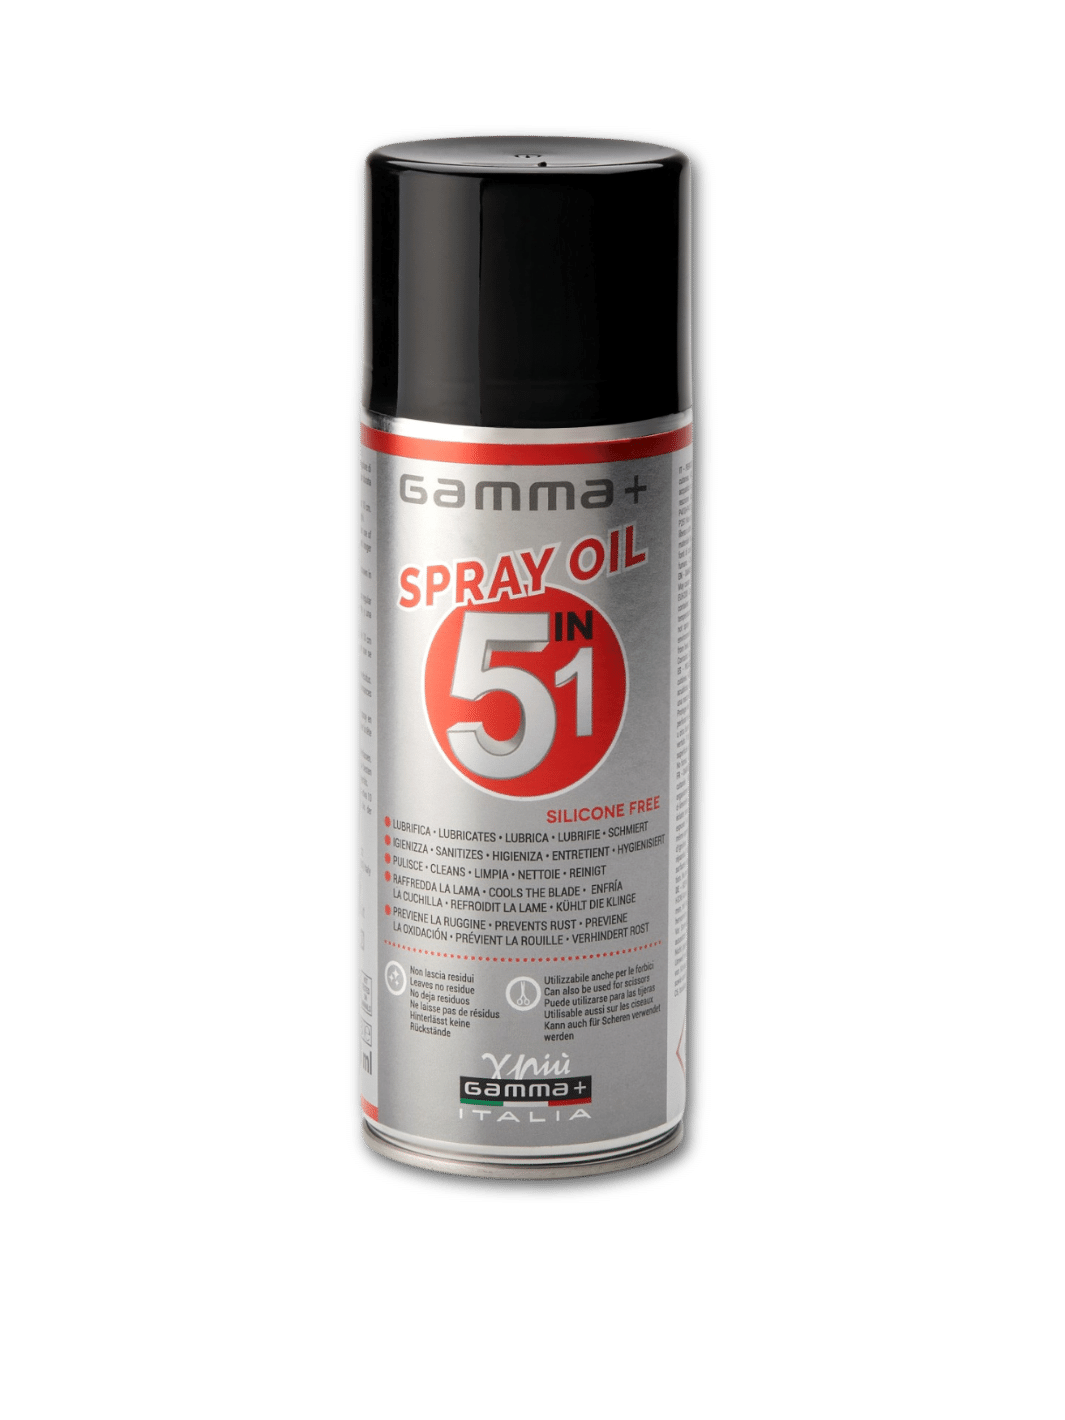 Gamma+ Spray Oil 5IN1 400 ml Schmierspray - Multifunktionales Schmiermittel bei Phullcutz erhältlich. Ideal für die Pflege und Wartung von Haar- und Bartschneidemaschinen.